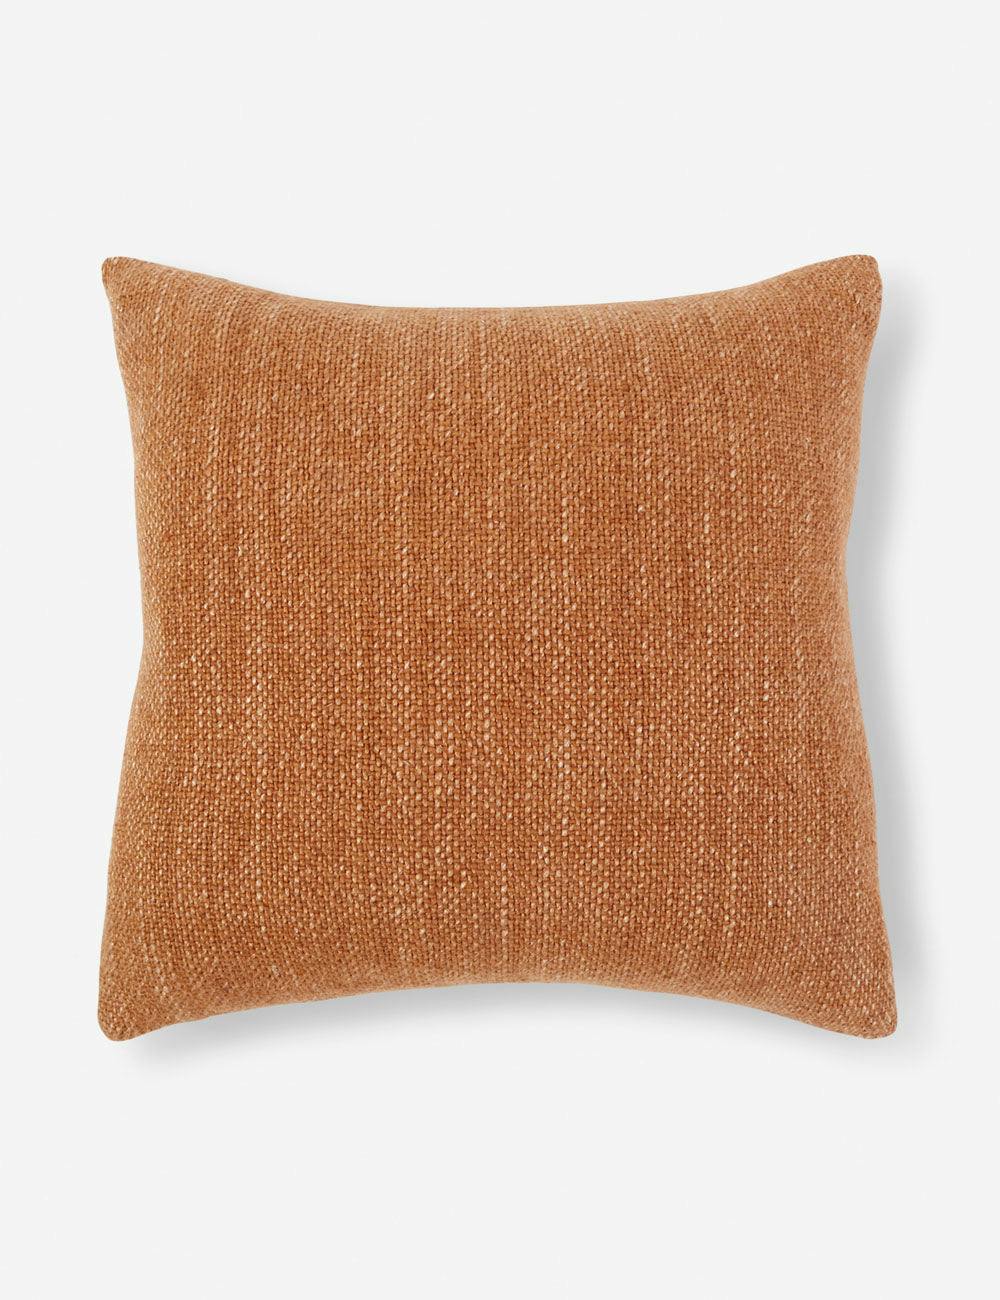 Hendrick Amber Linen 20" x 20" Handwoven Throw Pillow